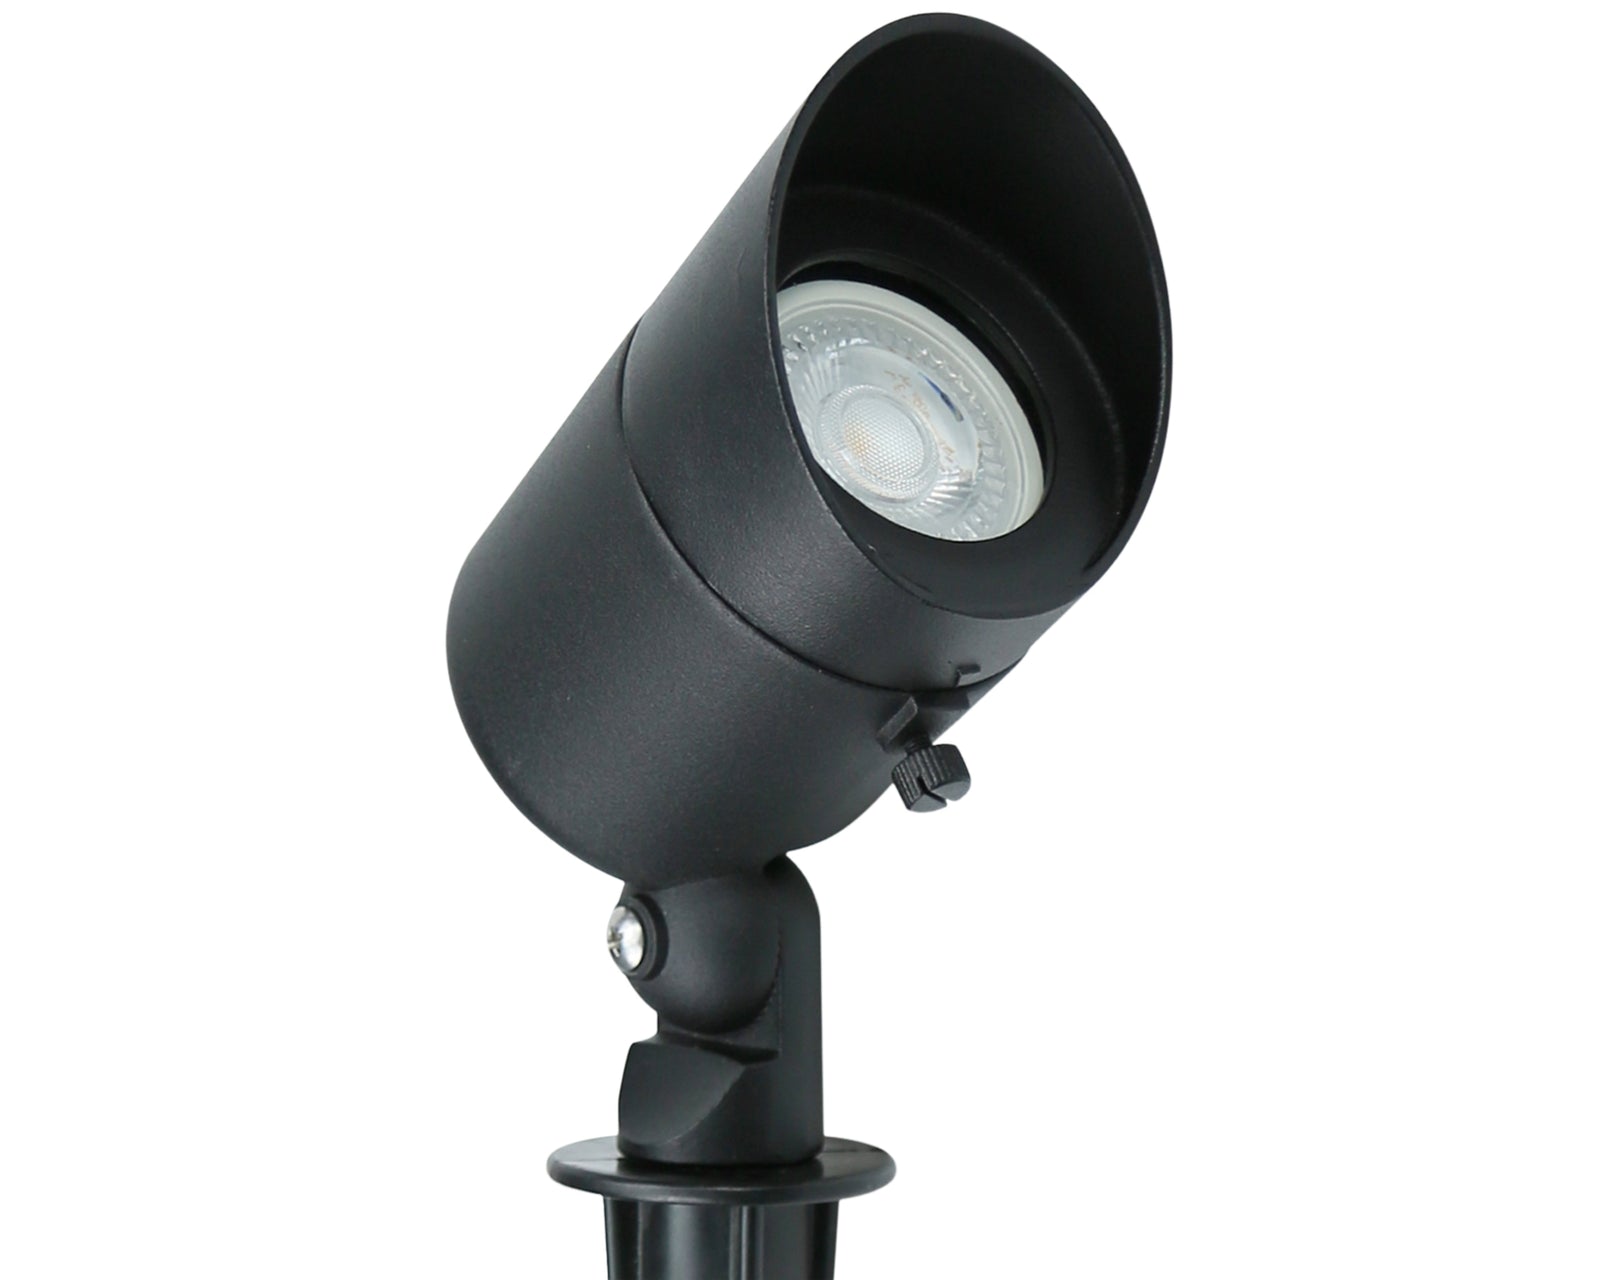 Lumina Lighting® 4W Landscape Spotlights | Low Voltage Landscape Lighting Lights - 12V 3000K | Replaceable MR16 LED Bulb (Black, 2-Pack)